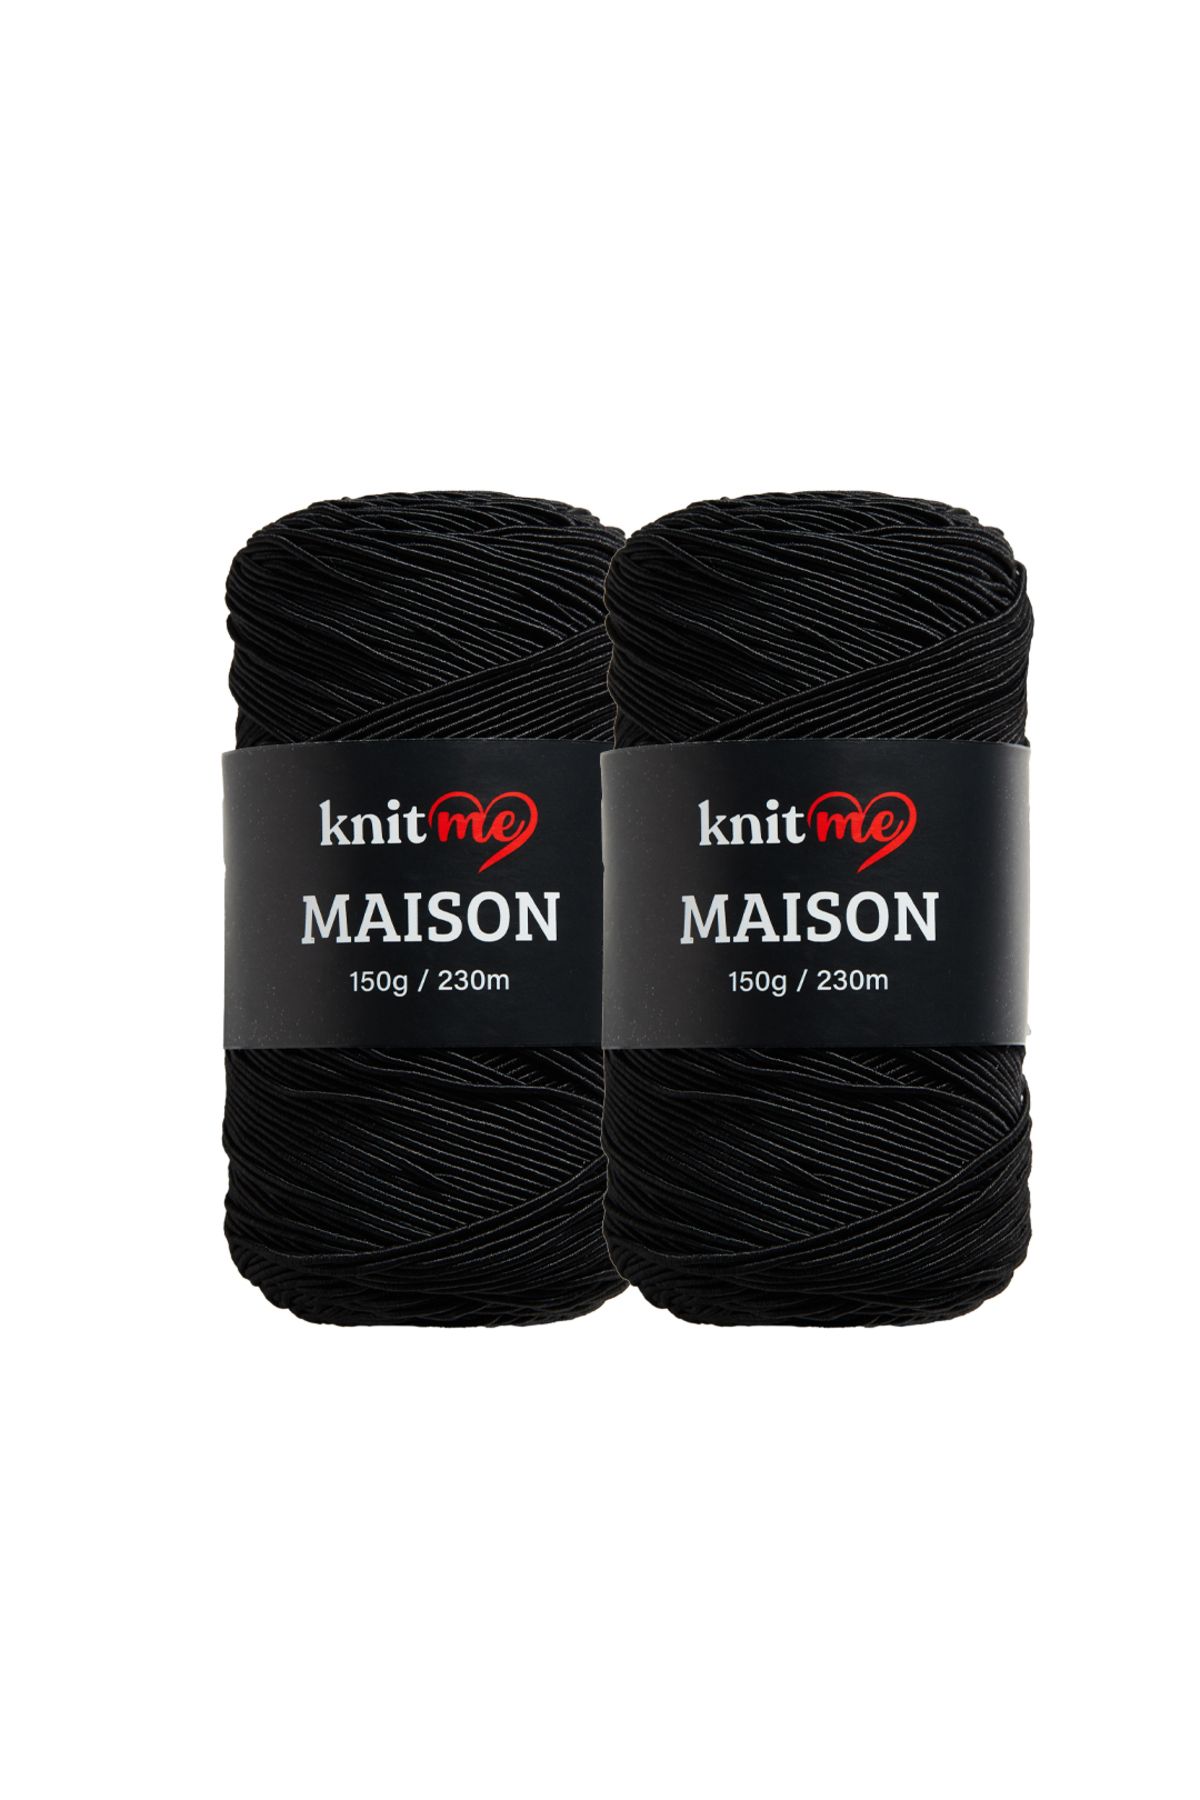 knitme Maison Supra 2'er Adet , 150'er Gram , 230m , El Örgü Ipi